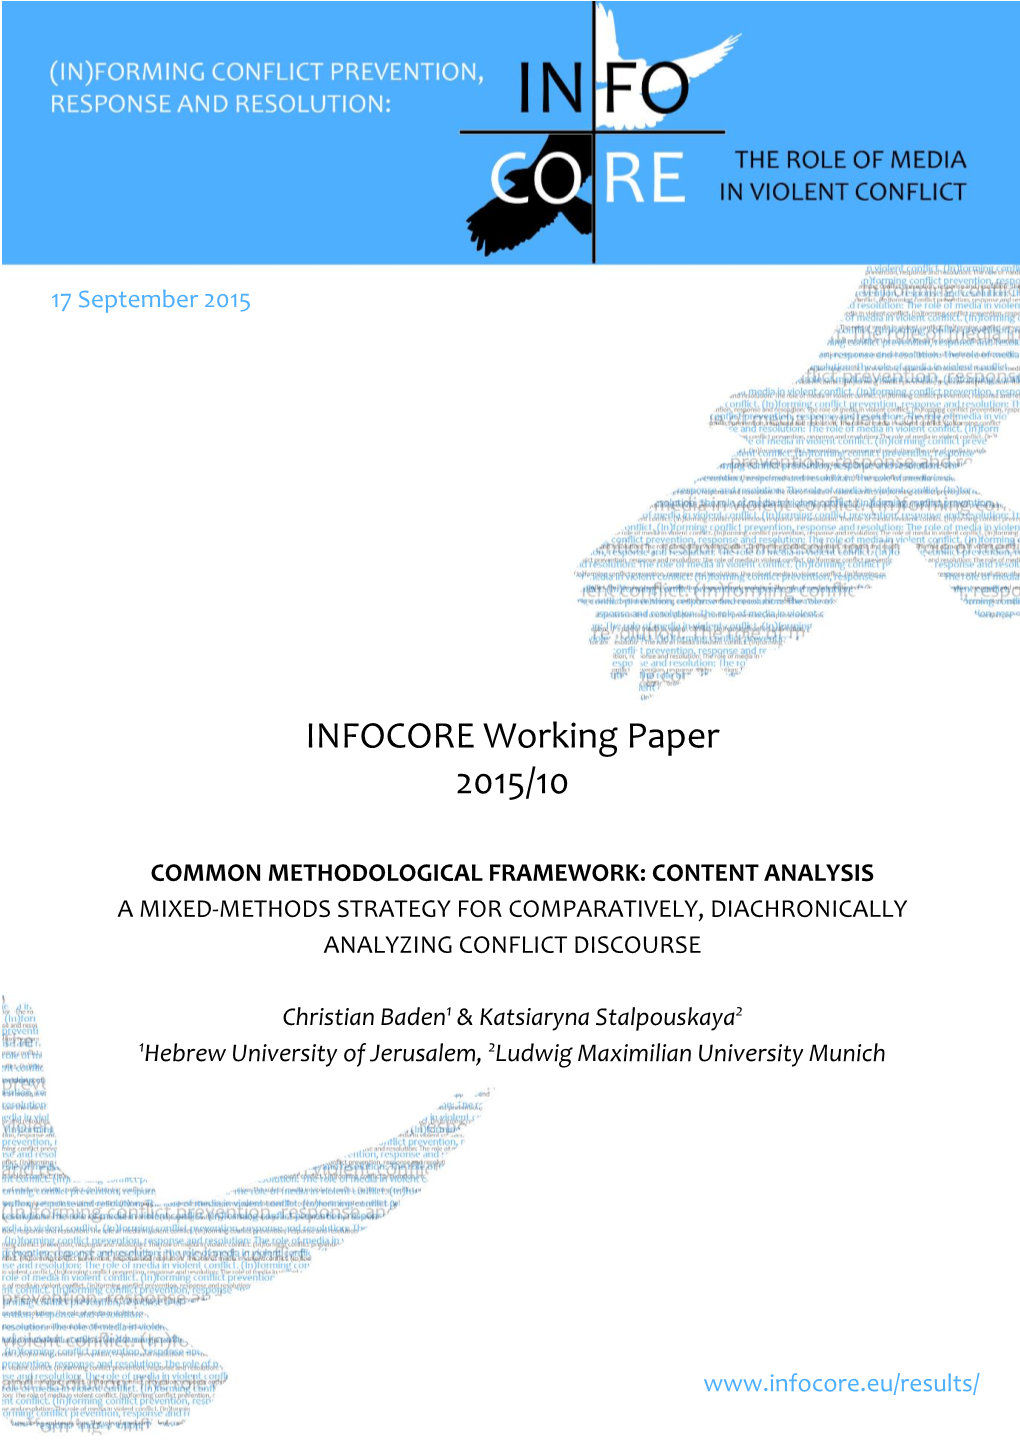 INFOCORE Working Paper 2015/10